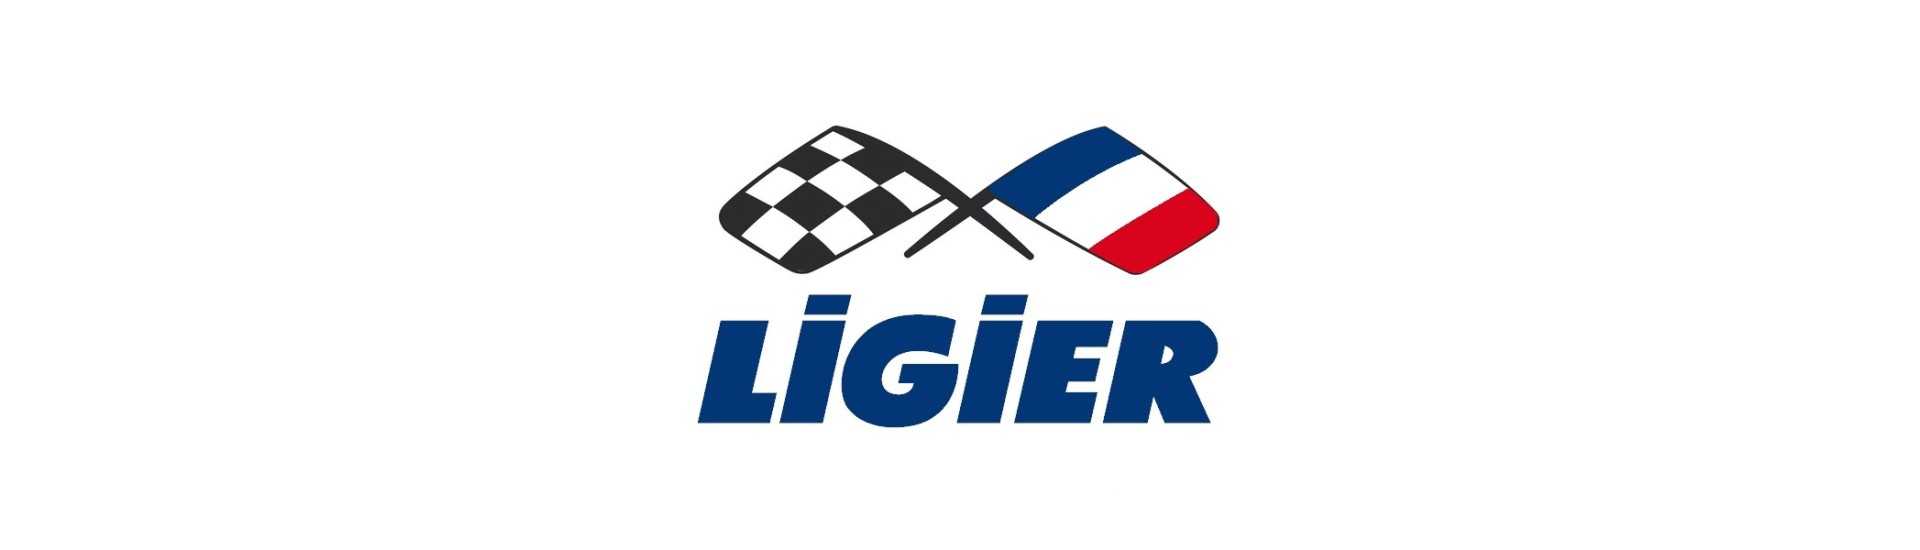 Cârpă de rezervor la cel mai bun preț pentru mașină fără permis Ligier